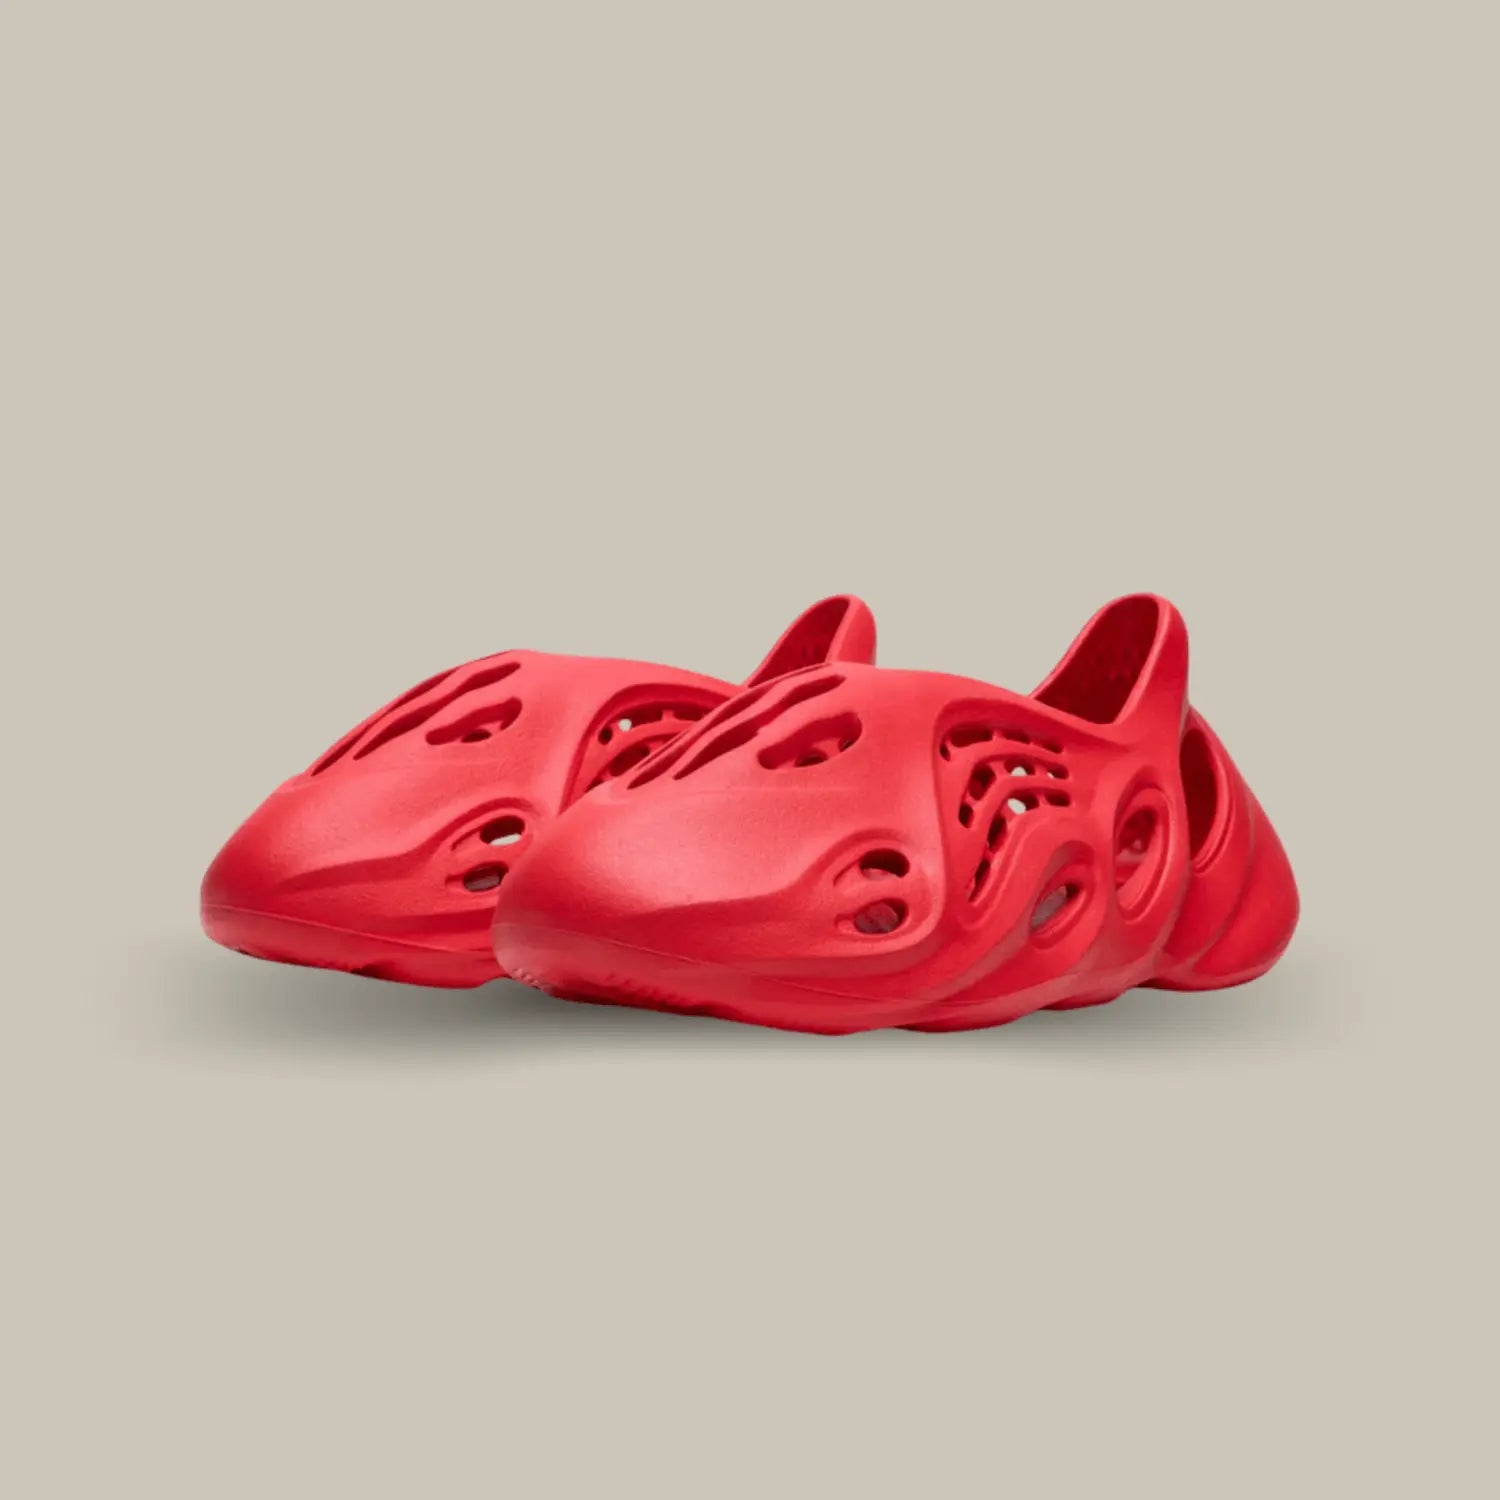 La Adidas Yeezy Foam Runner Vermillon possède une structure atypique avec son coloris monochrome rouge vif, on retrouve la célèbre mousse EVA pour assurer un confort sans égal.